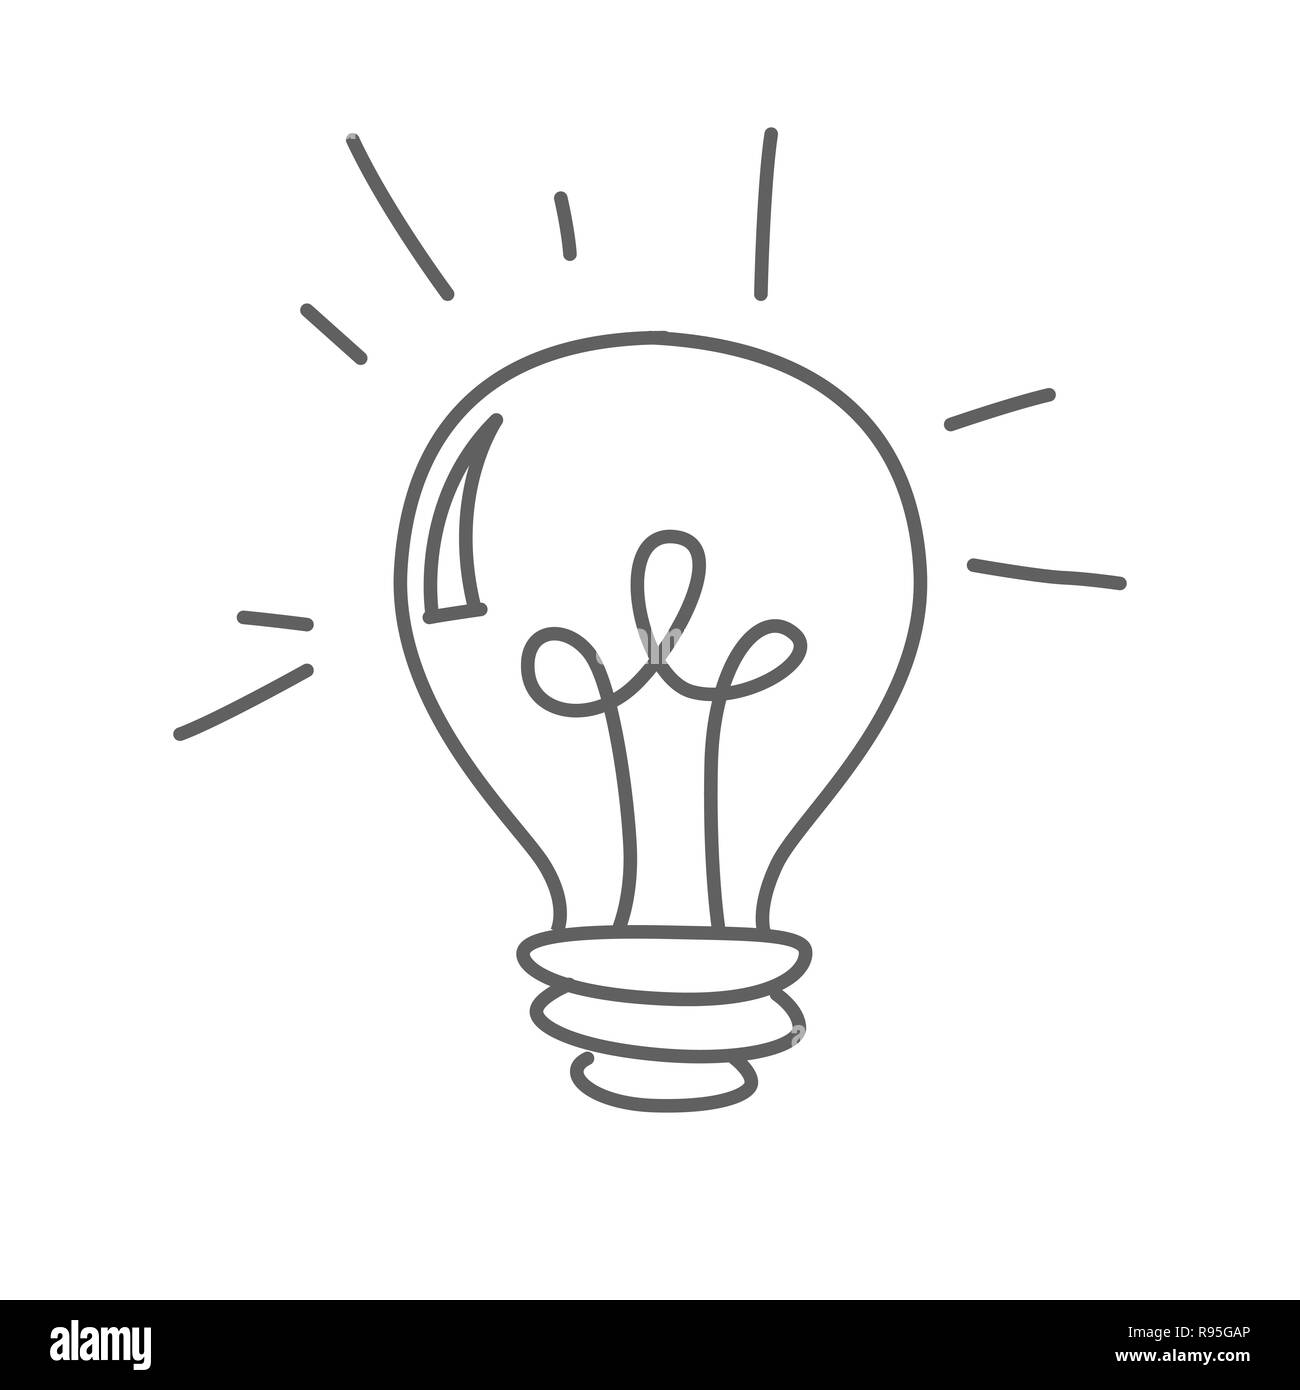 Leuchtende Lampe Lampe Vektor doodle Symbol isoliert auf Weiss, Hand  gezeichneten skizzenhaften Stil Stock-Vektorgrafik - Alamy